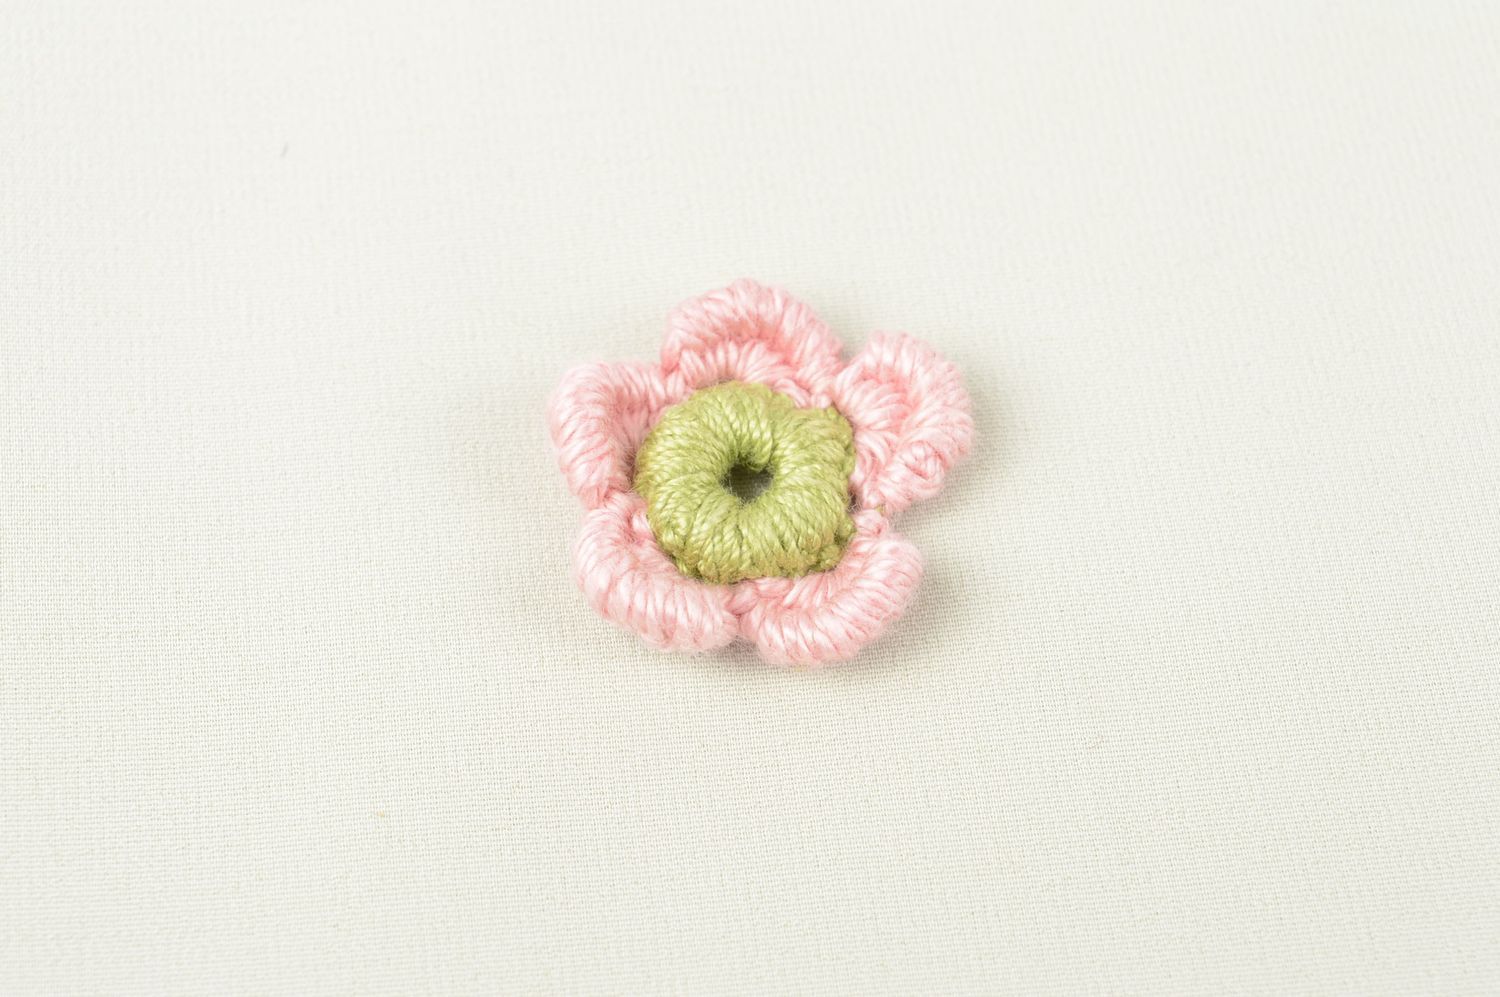 Фурнитура для бижутерии handmade цветок из ниток заготовка для броши модной фото 1